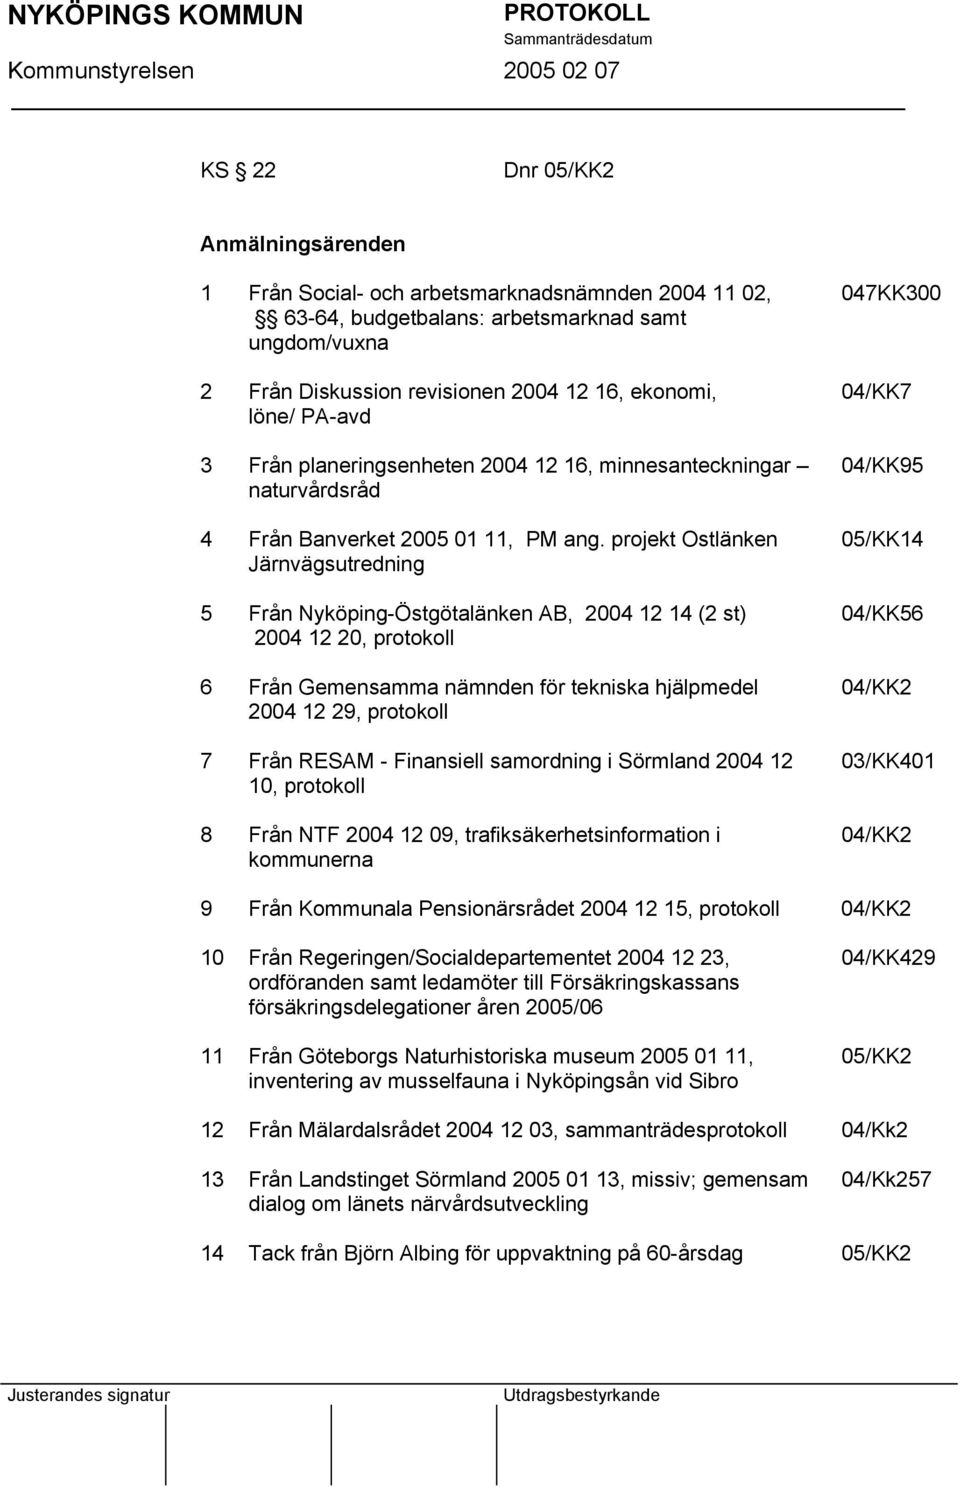 projekt Ostlänken Järnvägsutredning 5 Från Nyköping-Östgötalänken AB, 2004 12 14 (2 st) 2004 12 20, protokoll 6 Från Gemensamma nämnden för tekniska hjälpmedel 2004 12 29, protokoll 7 Från RESAM -